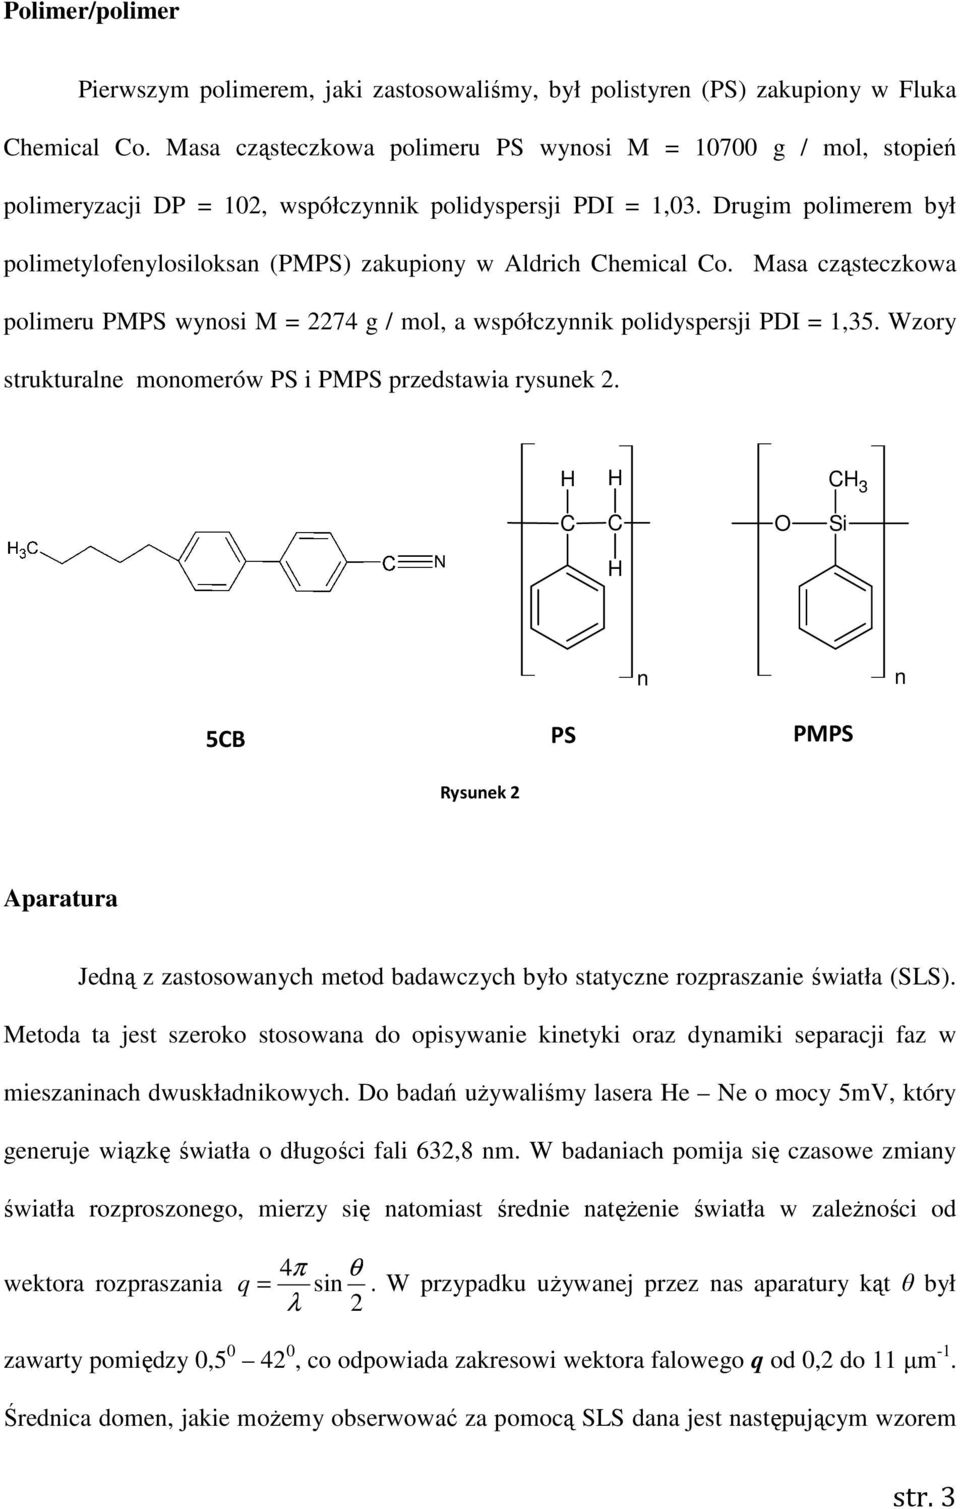 Drugim polimerem był polimetylofenylosiloksan (PMPS) zakupiony w Aldrich Chemical Co. Masa cząsteczkowa polimeru PMPS wynosi M = 2274 g / mol, a współczynnik polidyspersji PDI = 1,35.